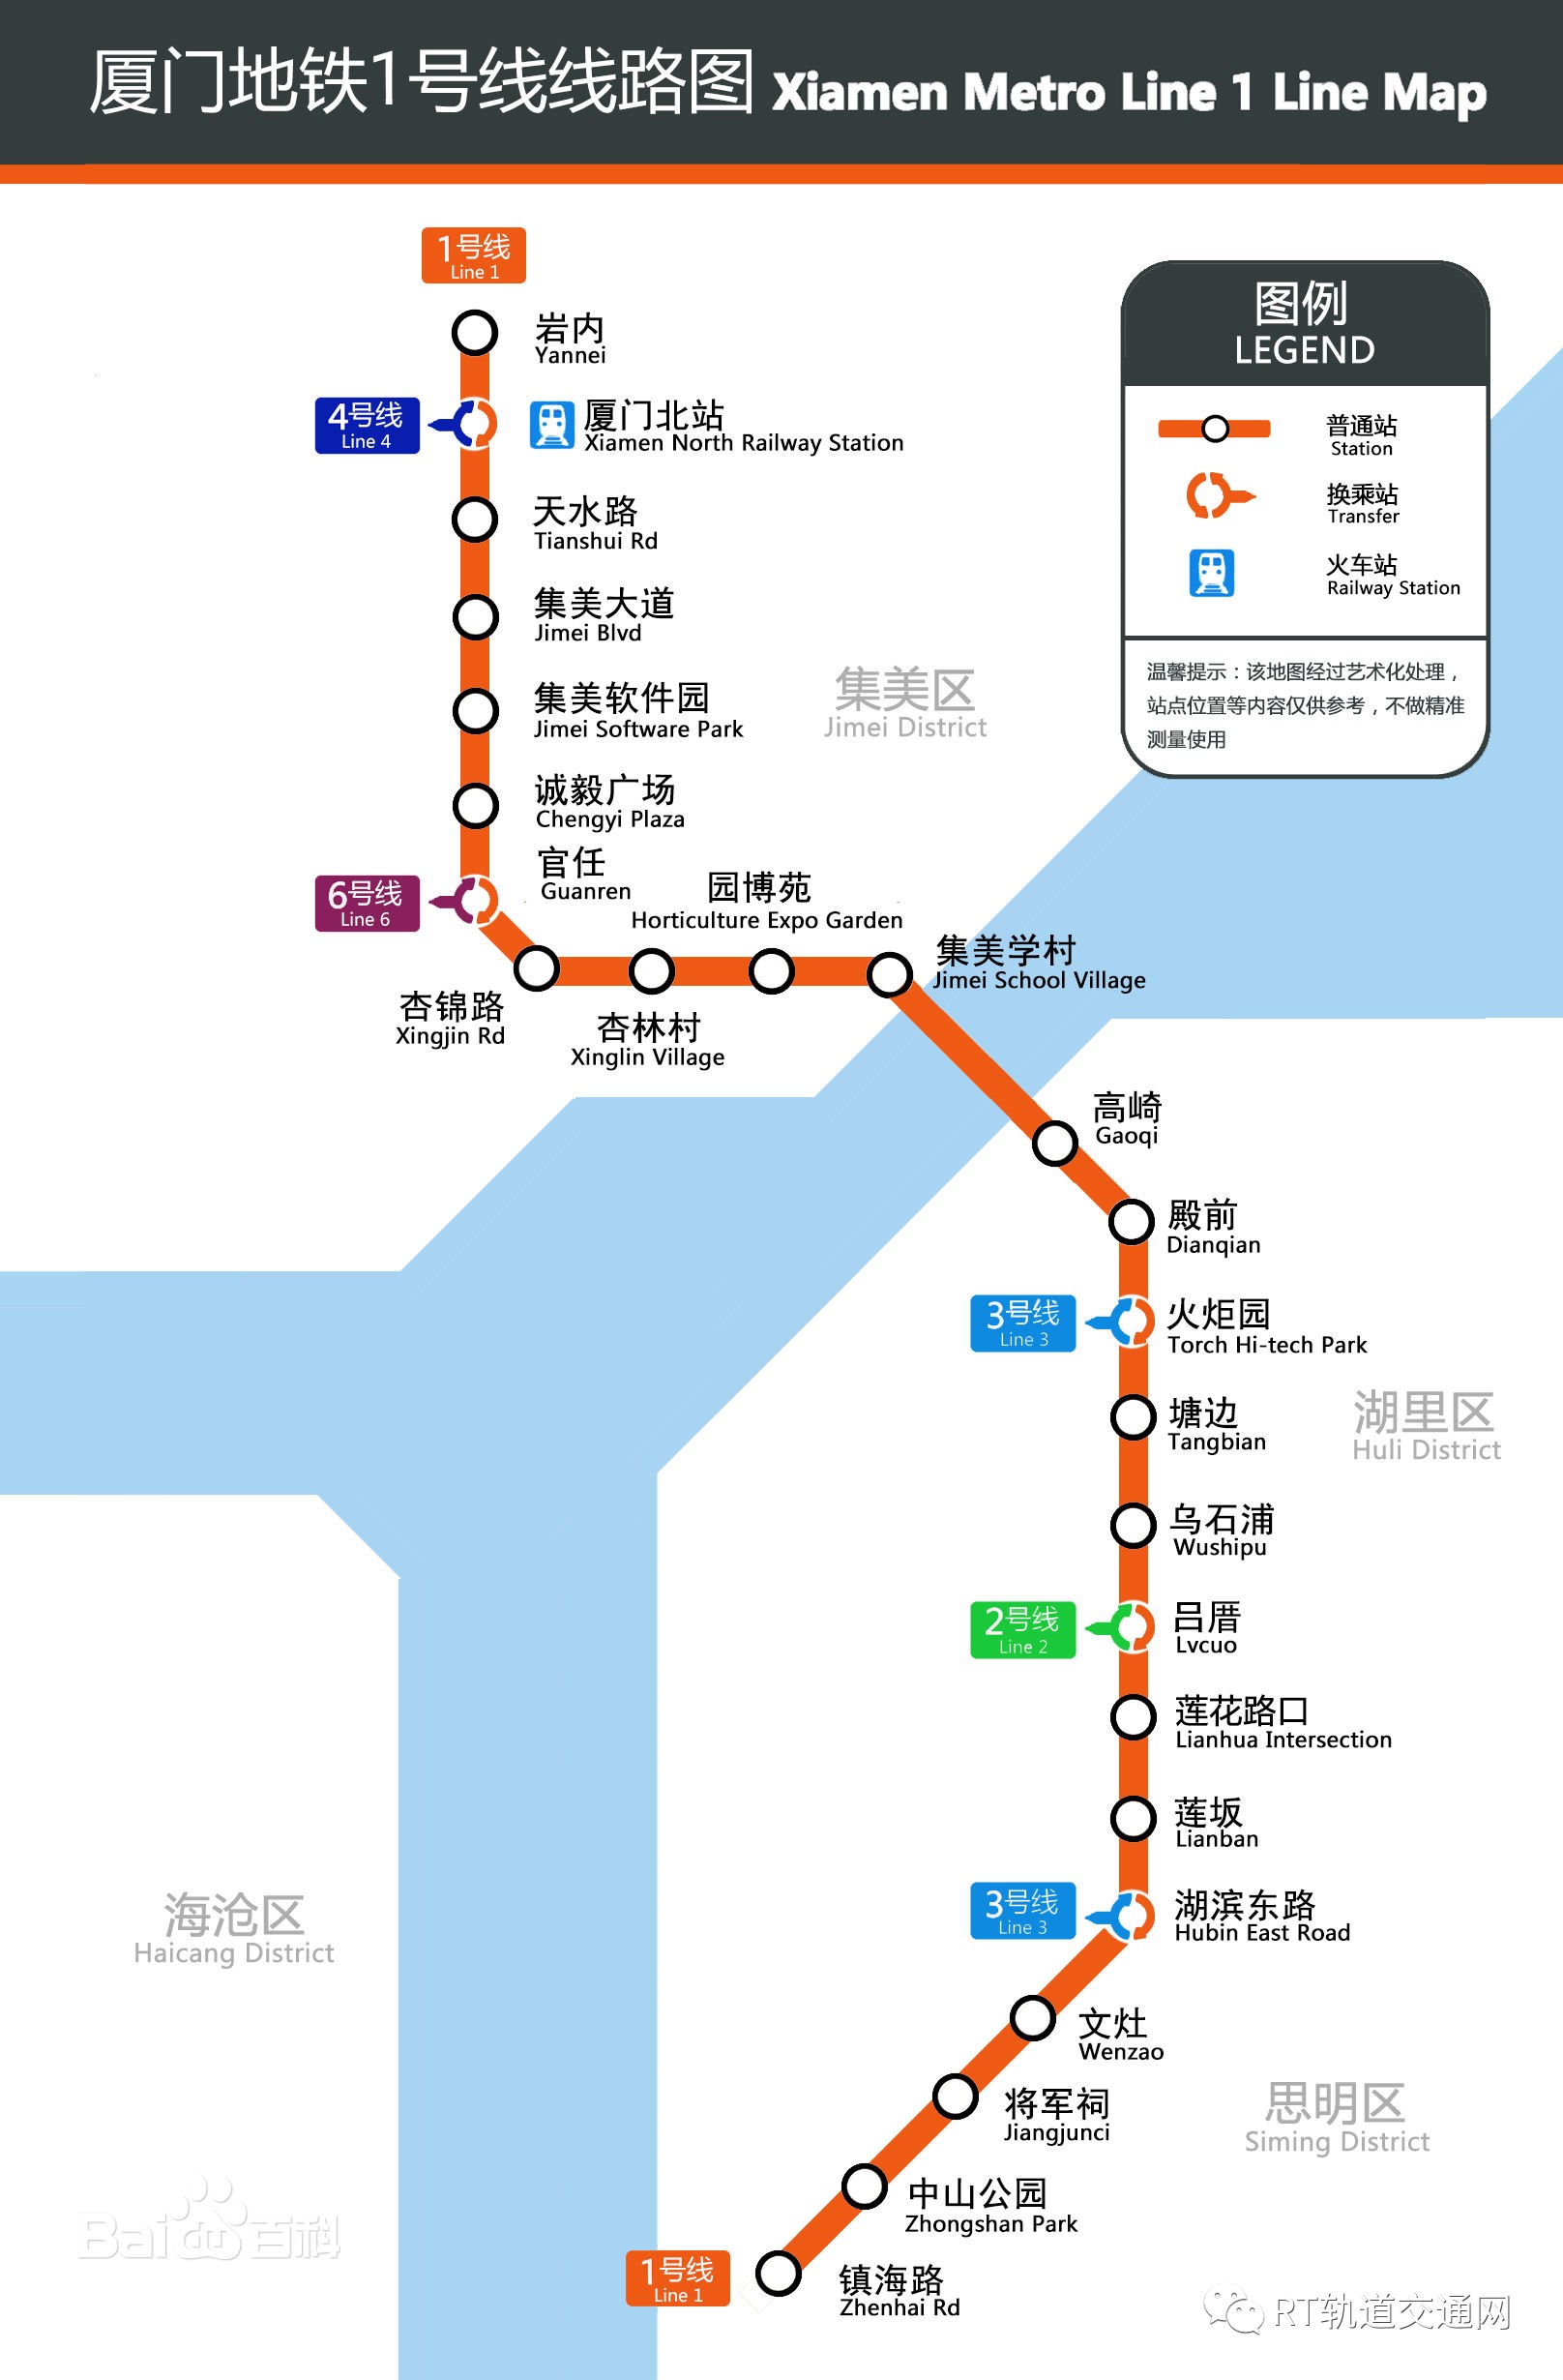 曝厦门地铁6条线最新规划 共设127站点18个换乘站 - 数据 -厦门乐居网